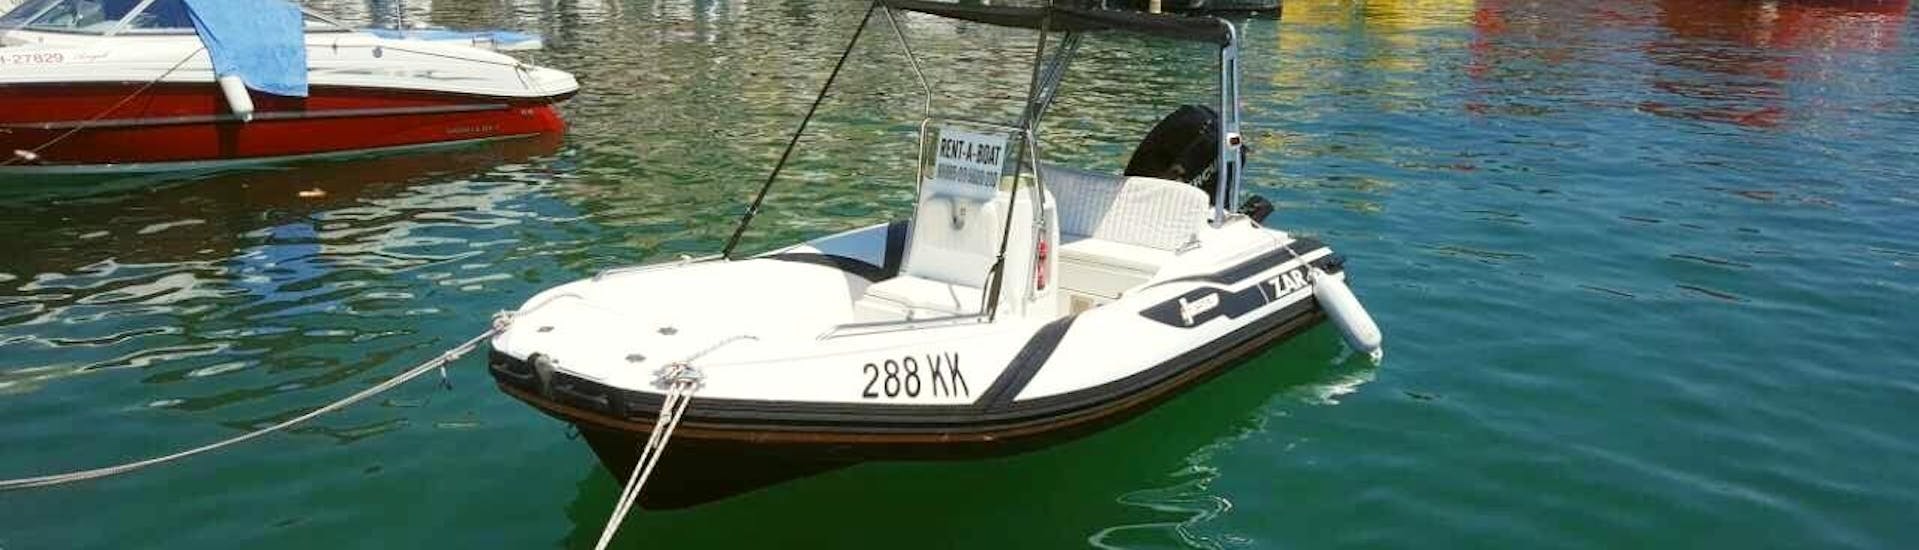 Bateau disponible pour une location de bateau à moteur pour 5 personnes à Krk avec Rent a Boat Phoenix.